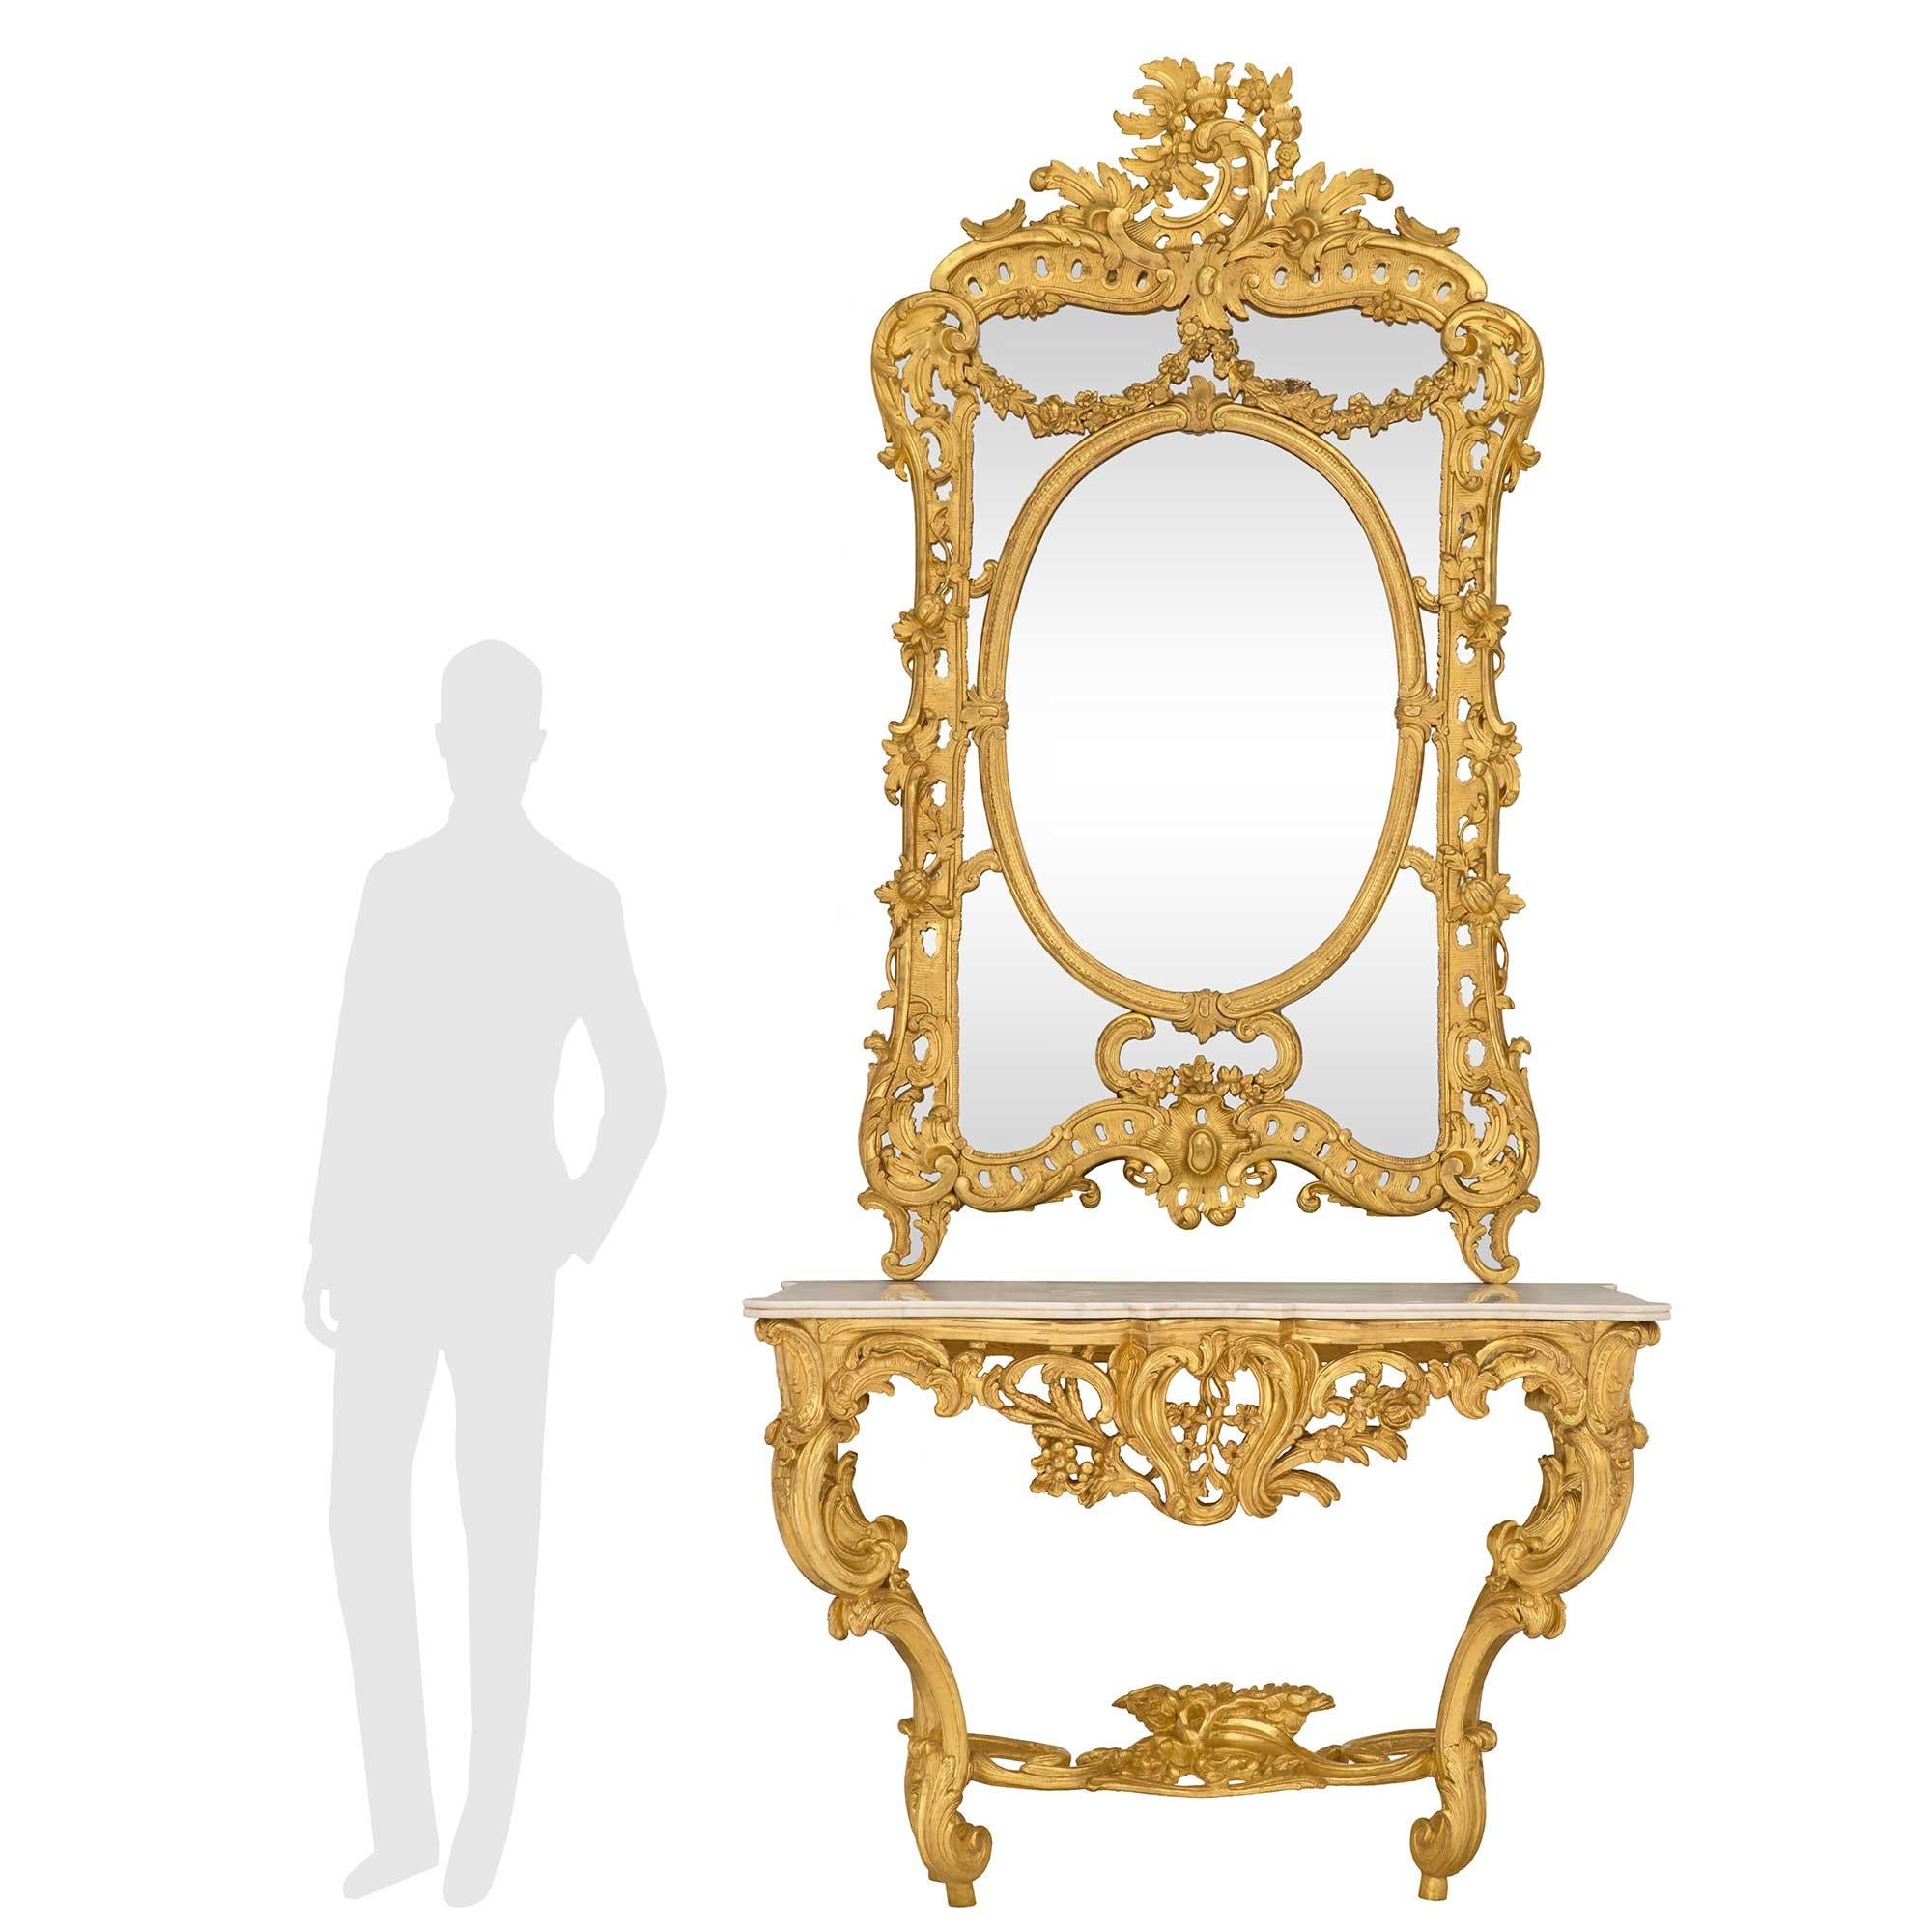 Eine monumentale und beeindruckende französische Konsole aus Goldholz und weißem Carrara-Marmor aus dem frühen 19. Jahrhundert im Stil Louis XV mit passendem Spiegel. Die atemberaubende Wandkonsole wird von außergewöhnlichen Cabriole-Beinen mit